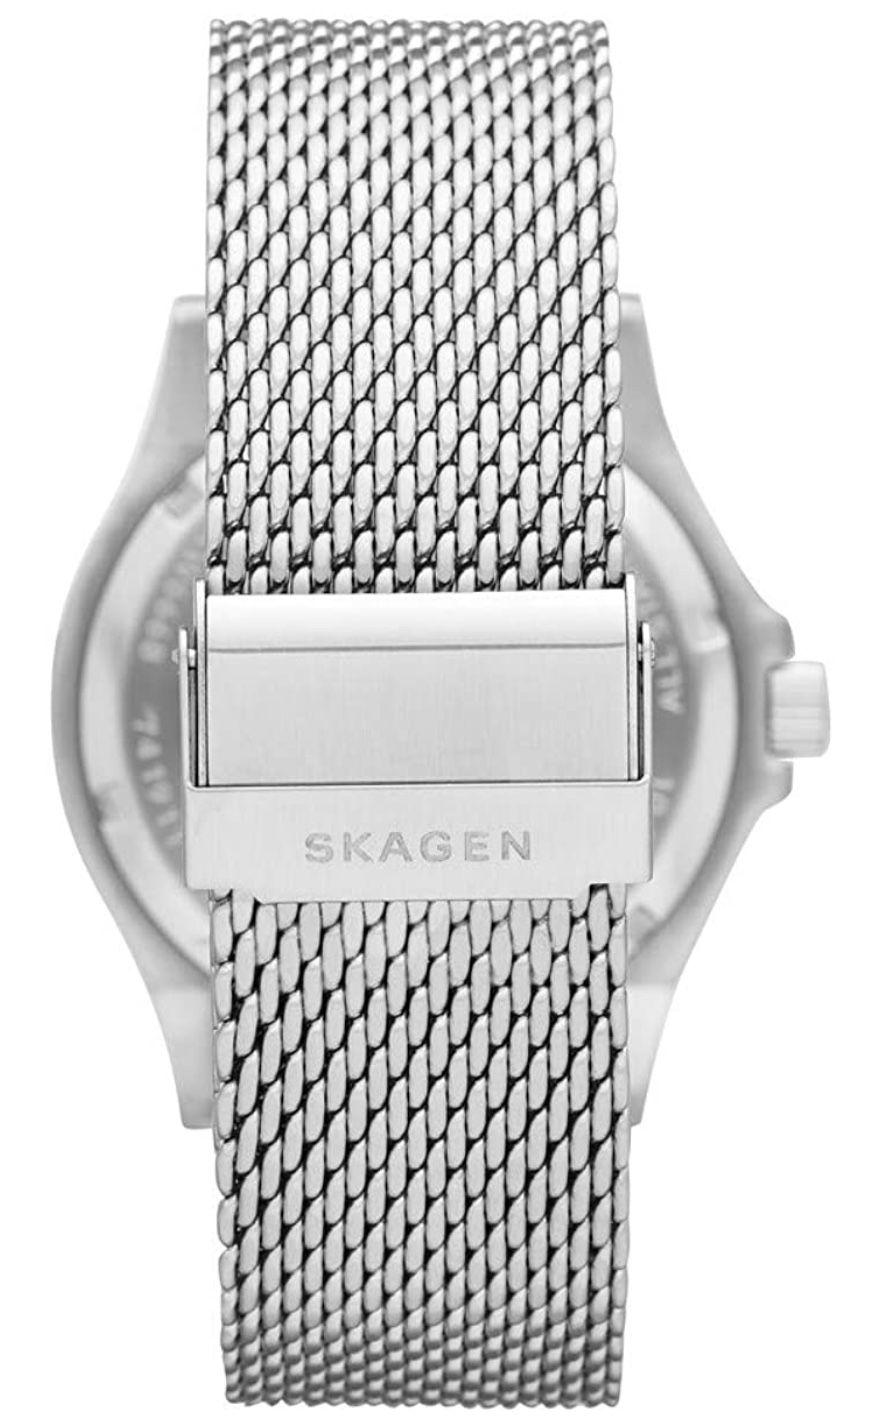 Skagen SKW6668 Herrenuhr mit Edelstahl Armband für 48,30€ (statt 79€)